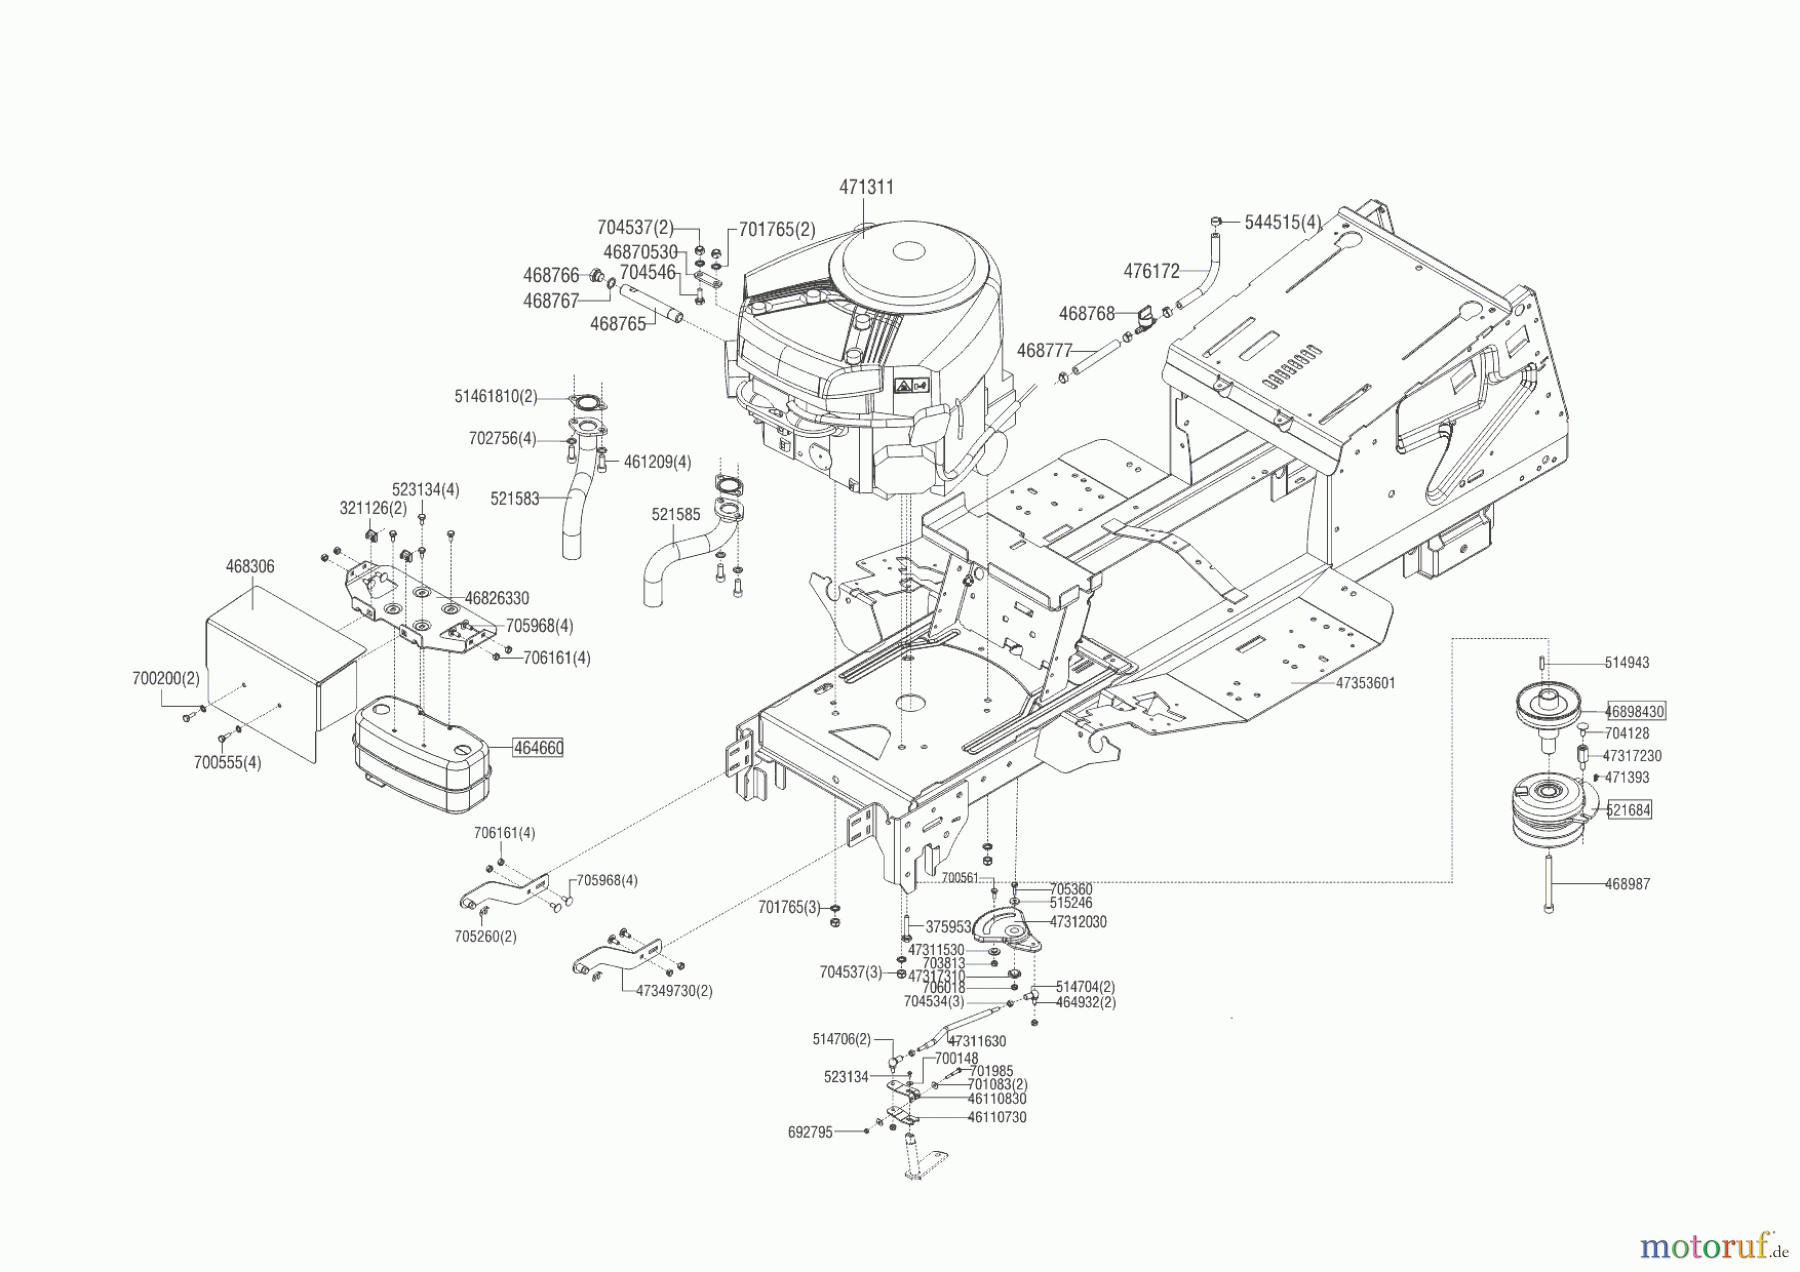  Powerline Gartentechnik Rasentraktor T 16-95.4 HD V2  ab 05/2016 Seite 2